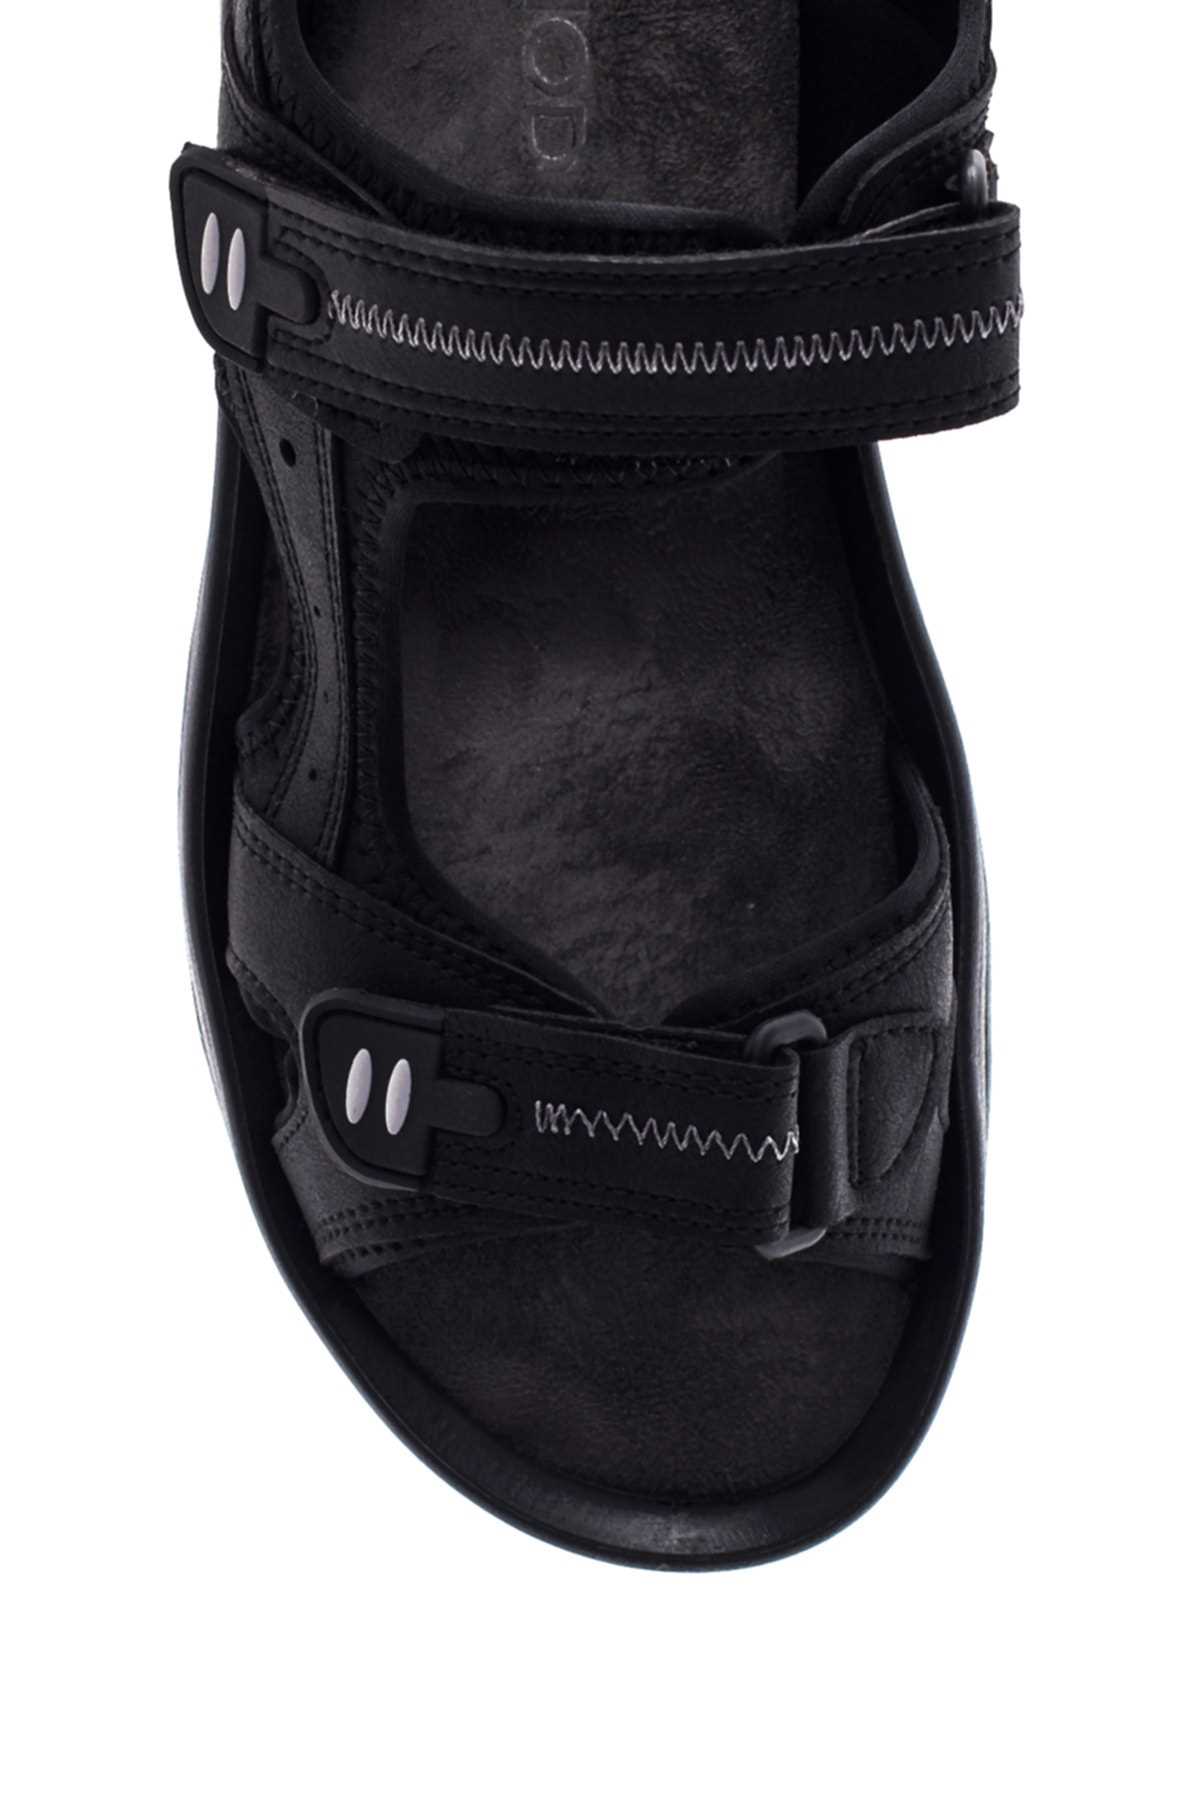 خرید کفش صندل مردانه چرم طبیعی از ترکیه برند Derimod رنگ مشکی ty245486106